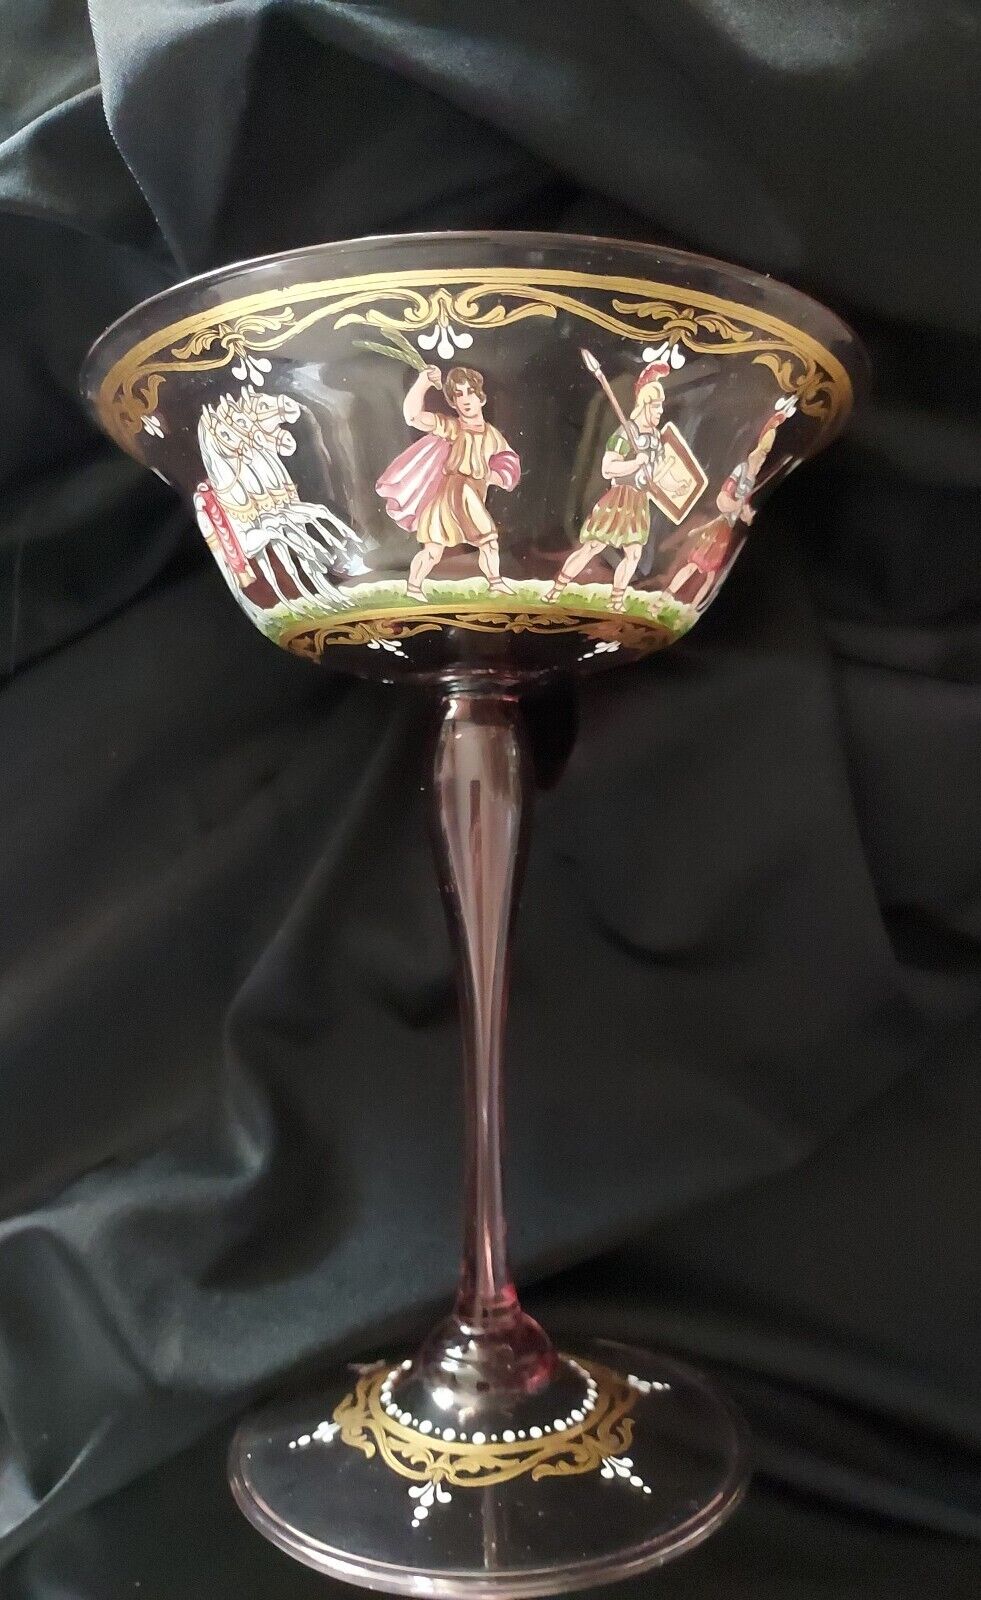 COMPAGNIA VENEZIA MURANO (C. V. M.) Salviati Venetian Glass Goblet, Mint